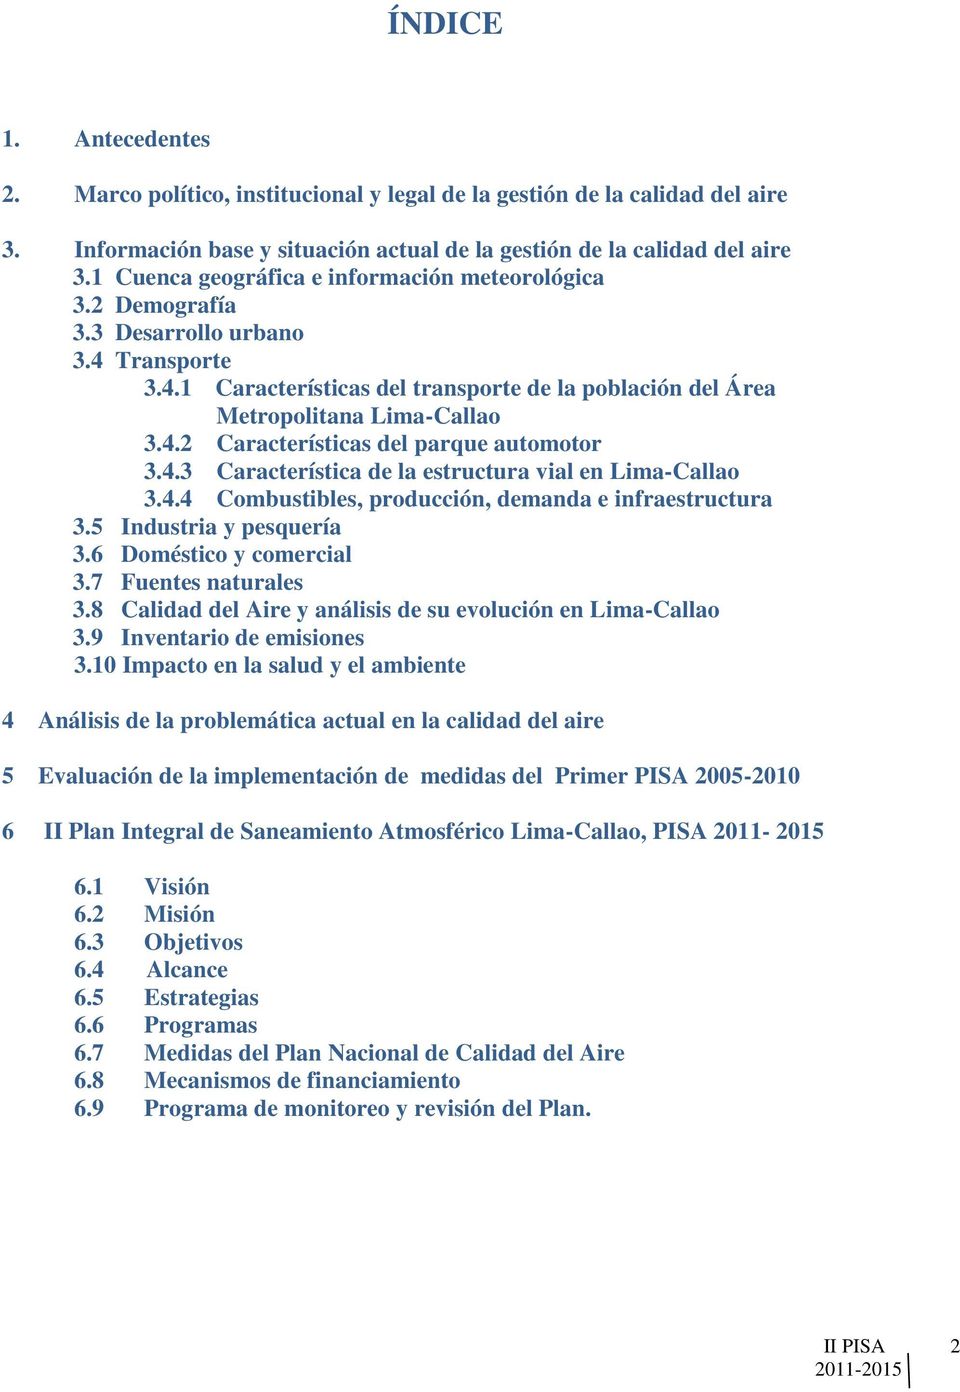 4.3 Característica de la estructura vial en Lima-Callao 3.4.4 Combustibles, producción, demanda e infraestructura 3.5 Industria y pesquería 3.6 Doméstico y comercial 3.7 Fuentes naturales 3.